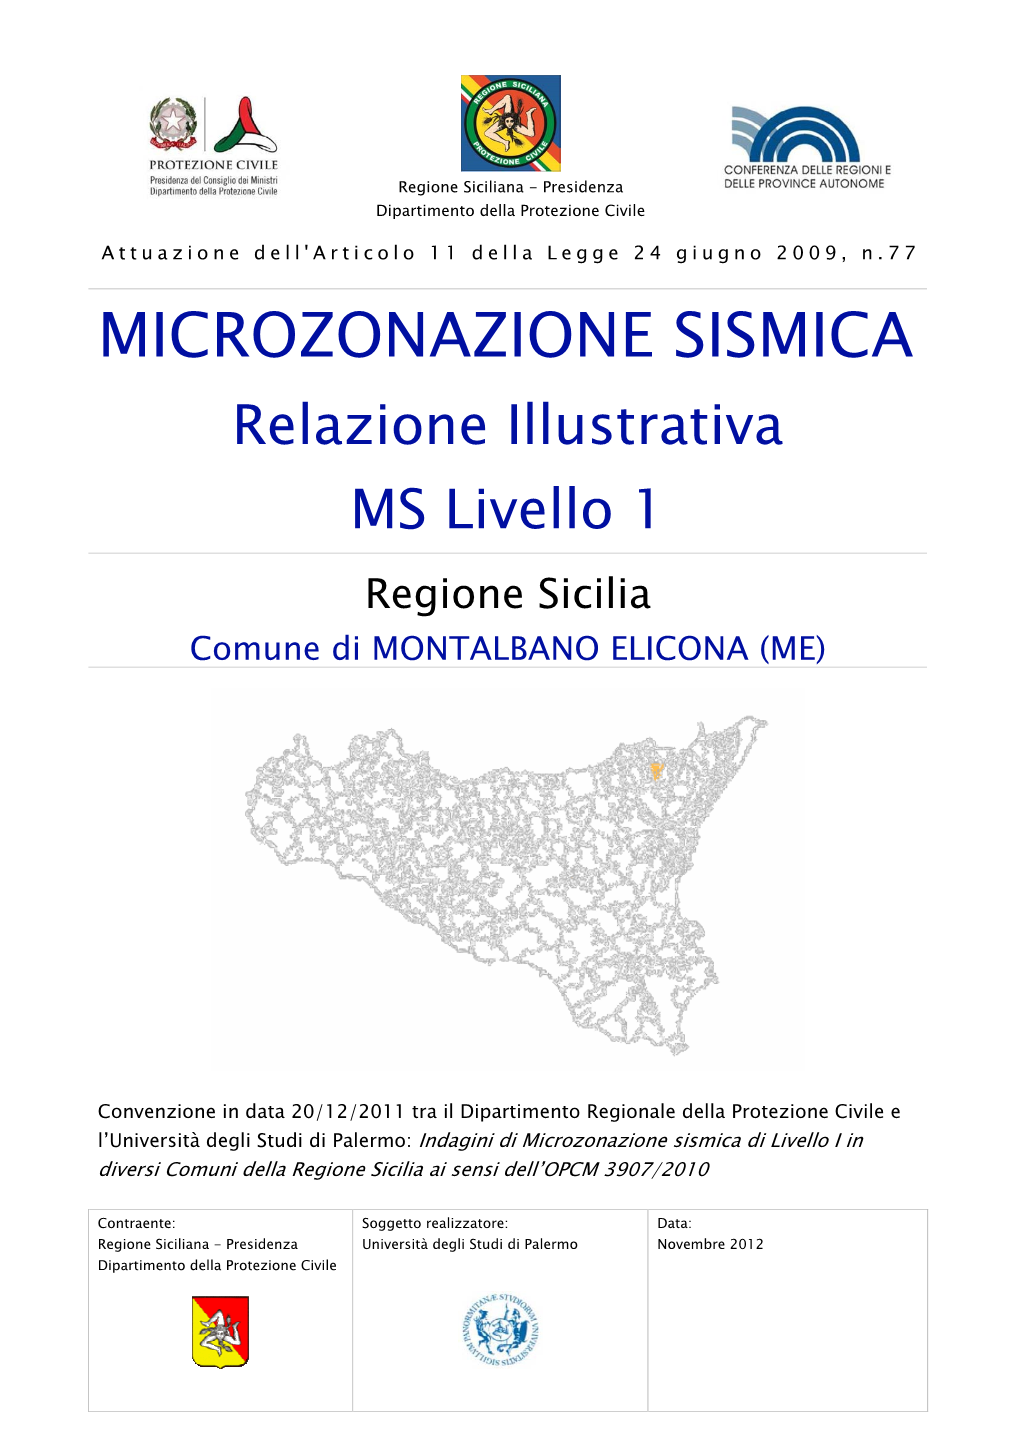 MICROZONAZIONE SISMICA Relazione Illustrativa MS Livello 1 Regione Sicilia Comune Di MONTALBANO ELICONA (ME)